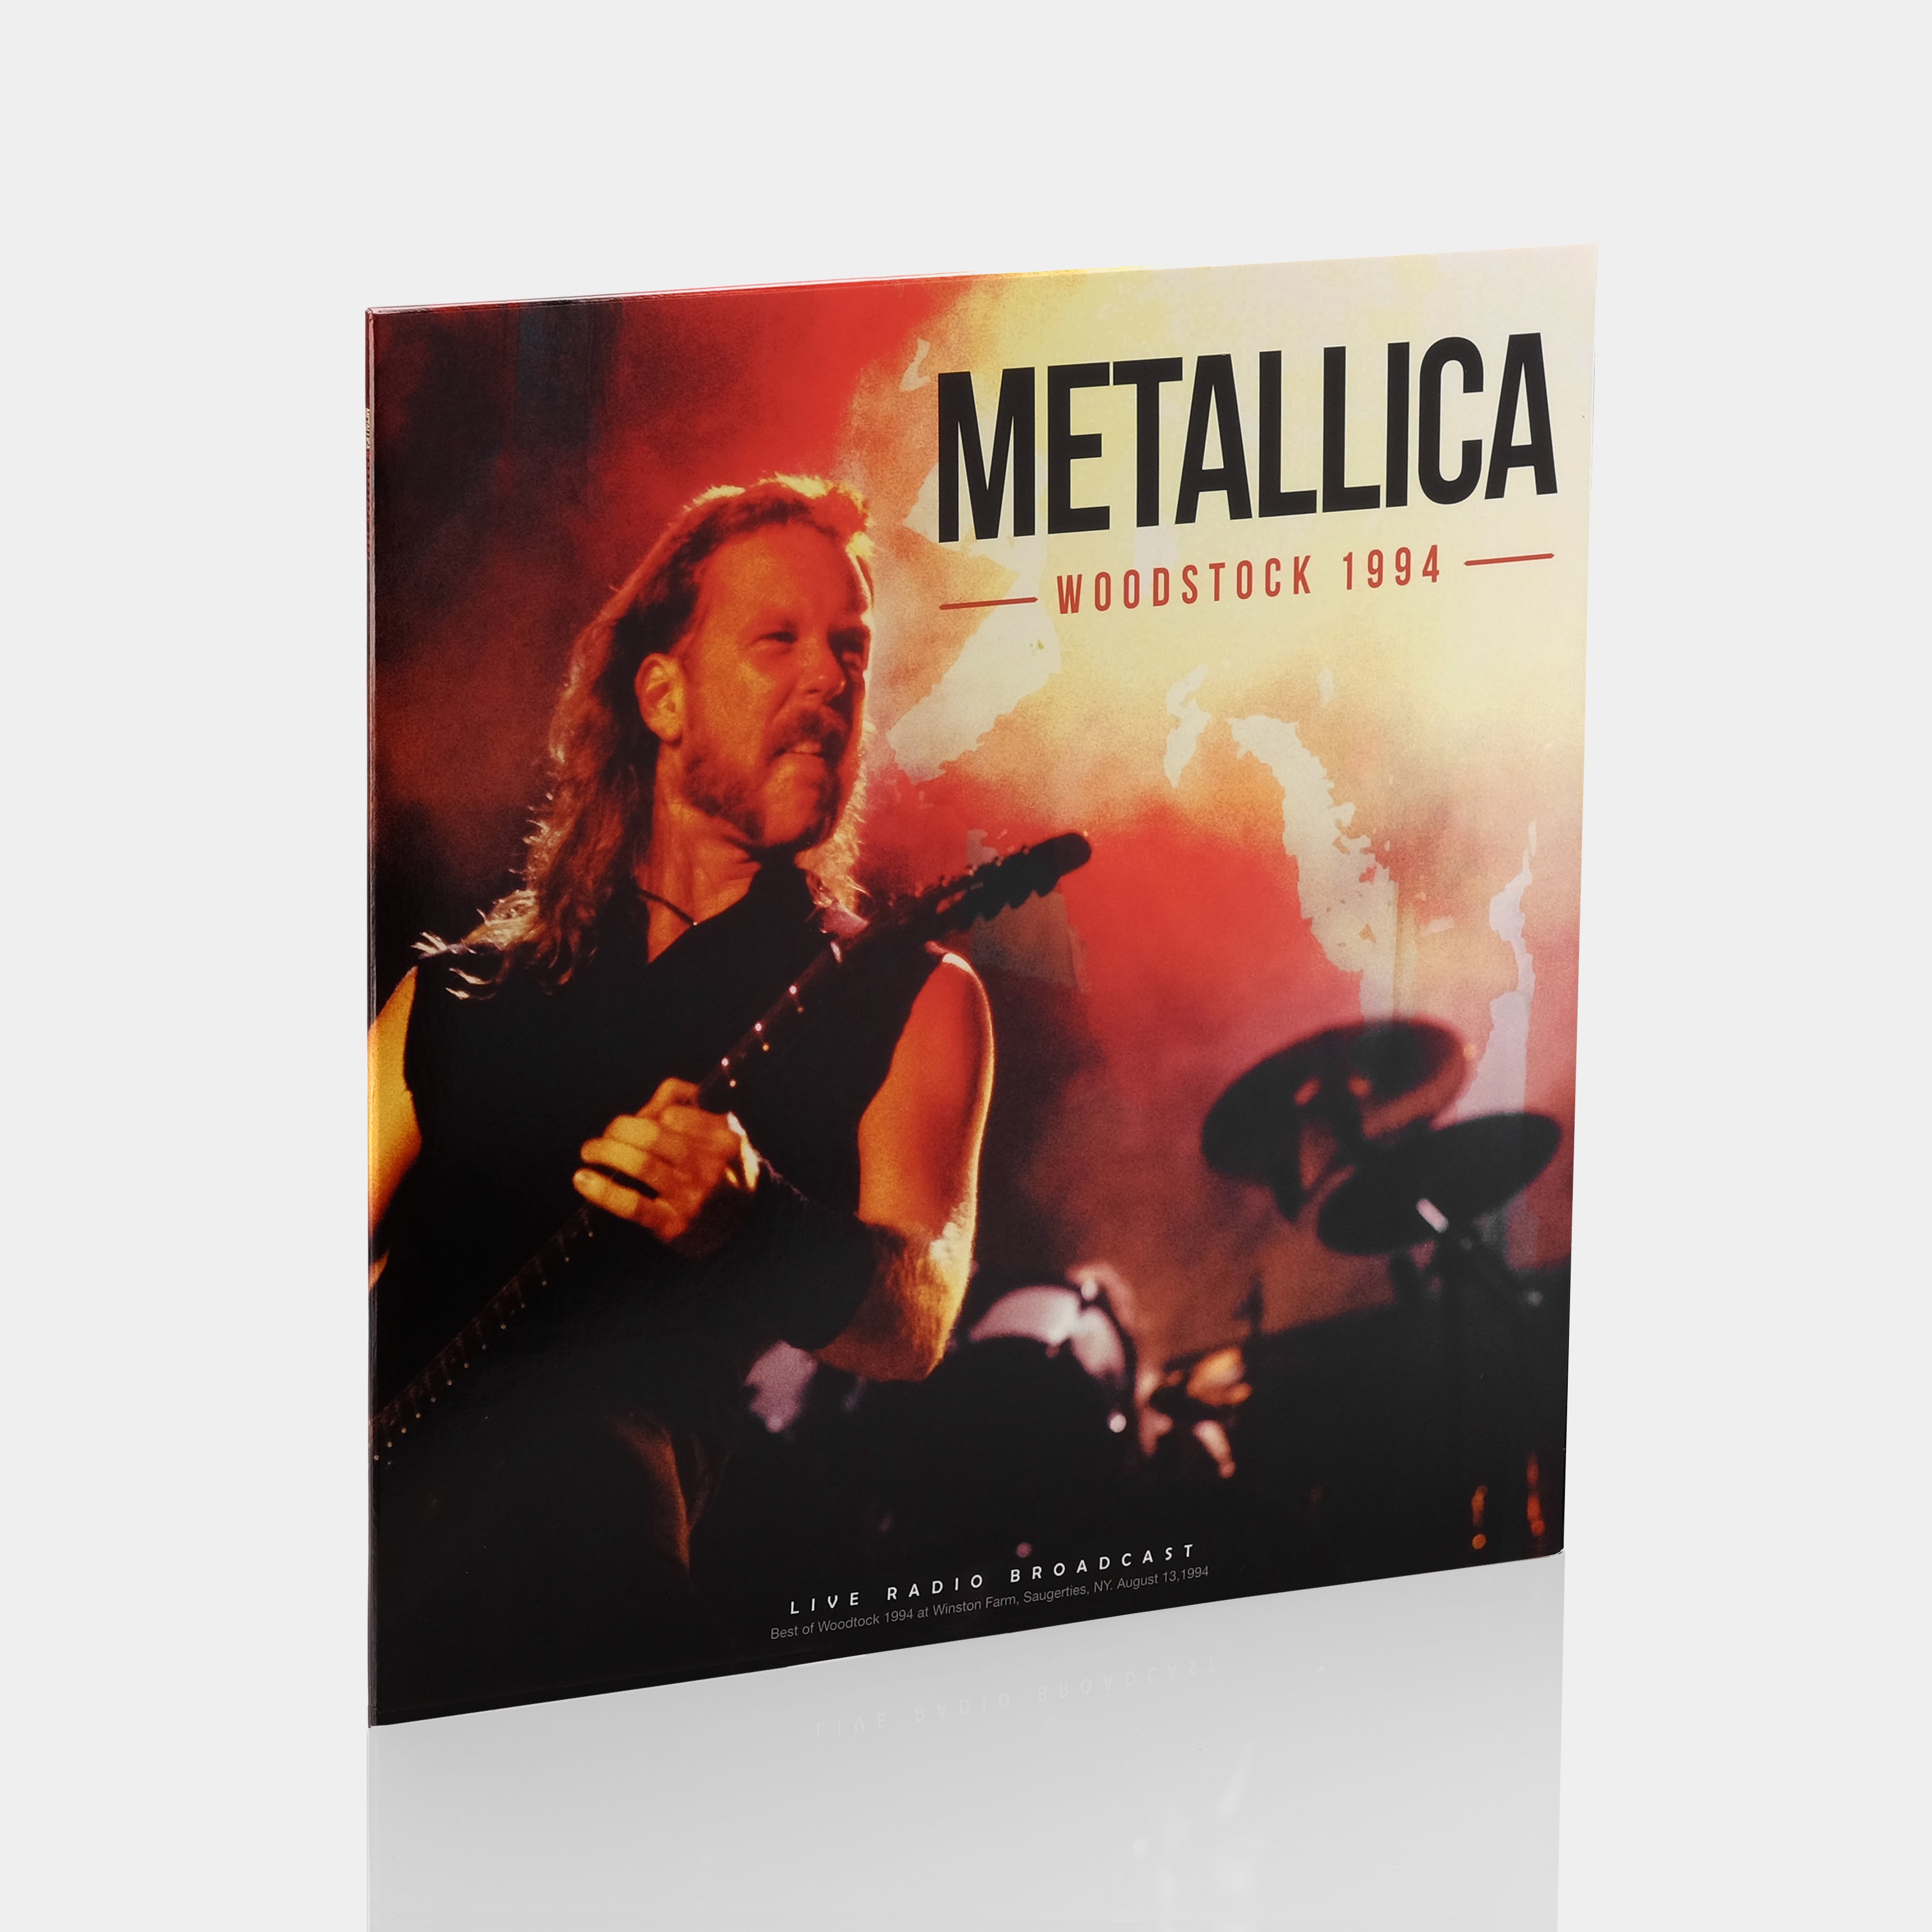 Metallica - Woodstock 1994 LP Vinyl Record